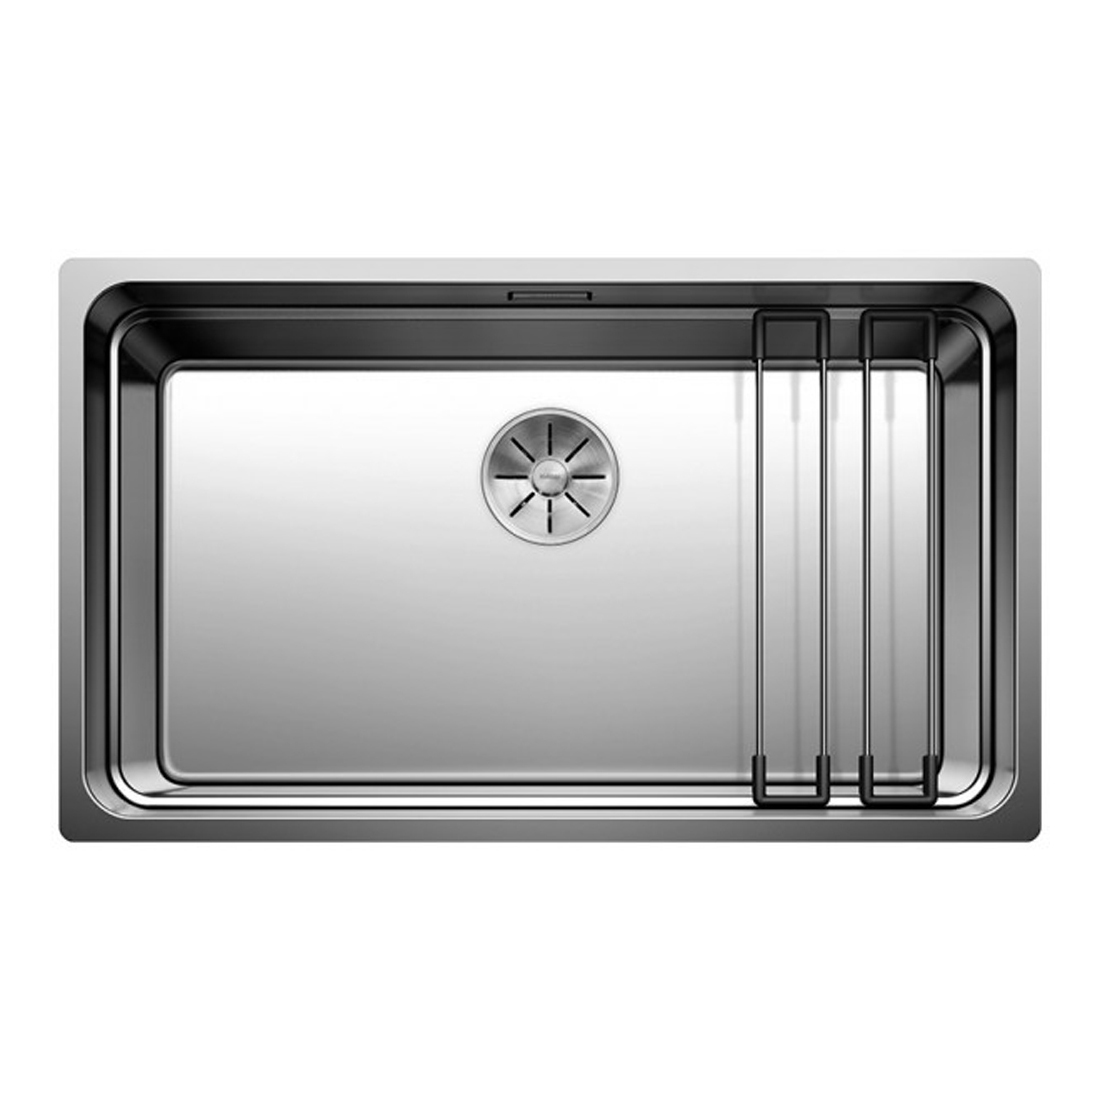 Кухонная мойка Blanco Etagon 700-U зеркальная полировка кухонная мойка blanco claron 550 if зеркальная полировка